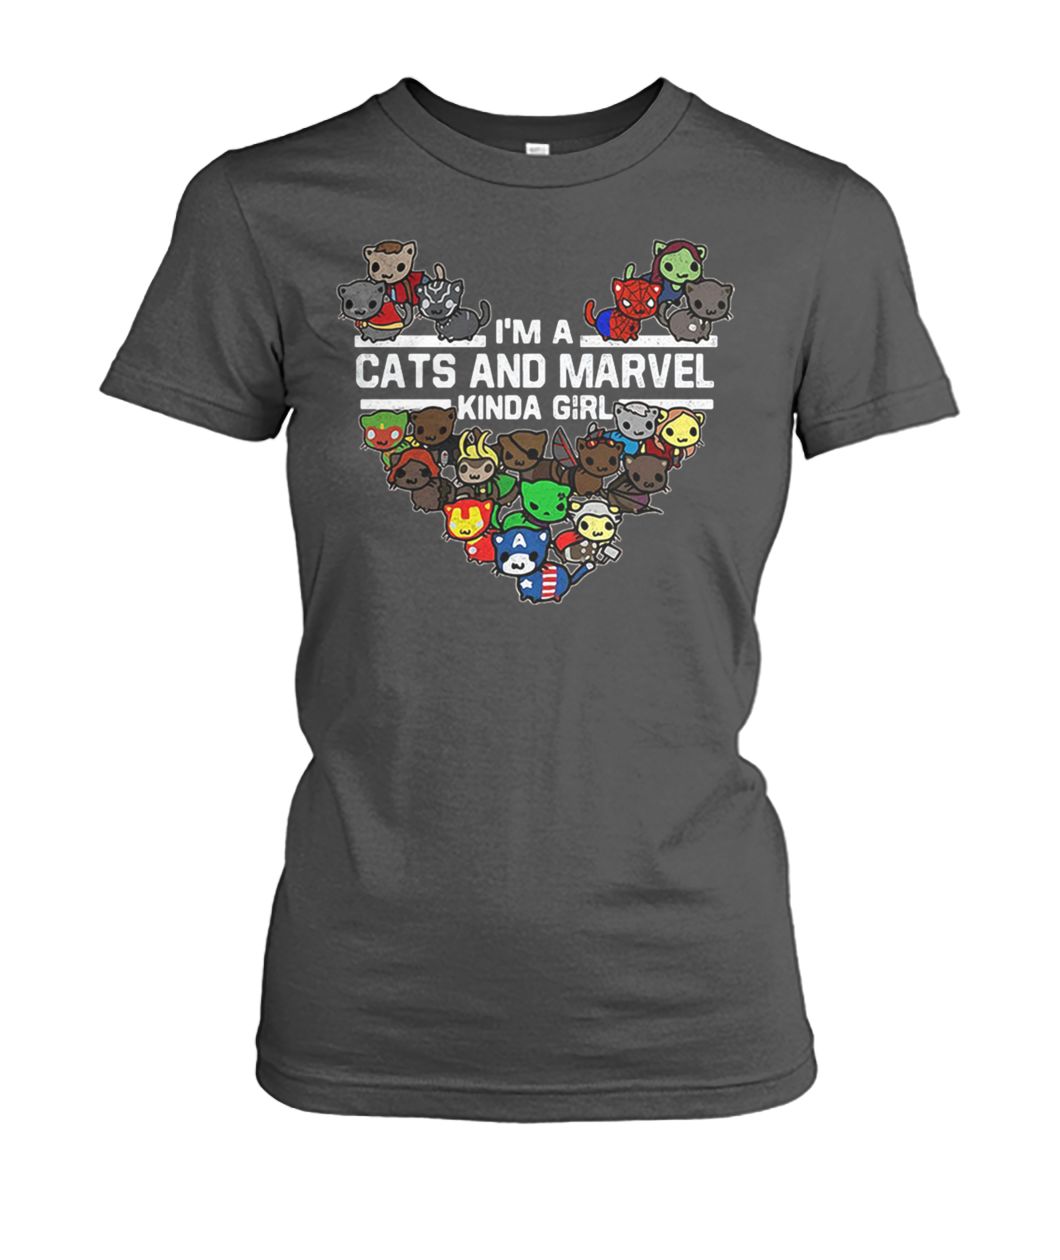 Marvel avengers endgame I'm a cats and Marvel kinda girl women's crew tee